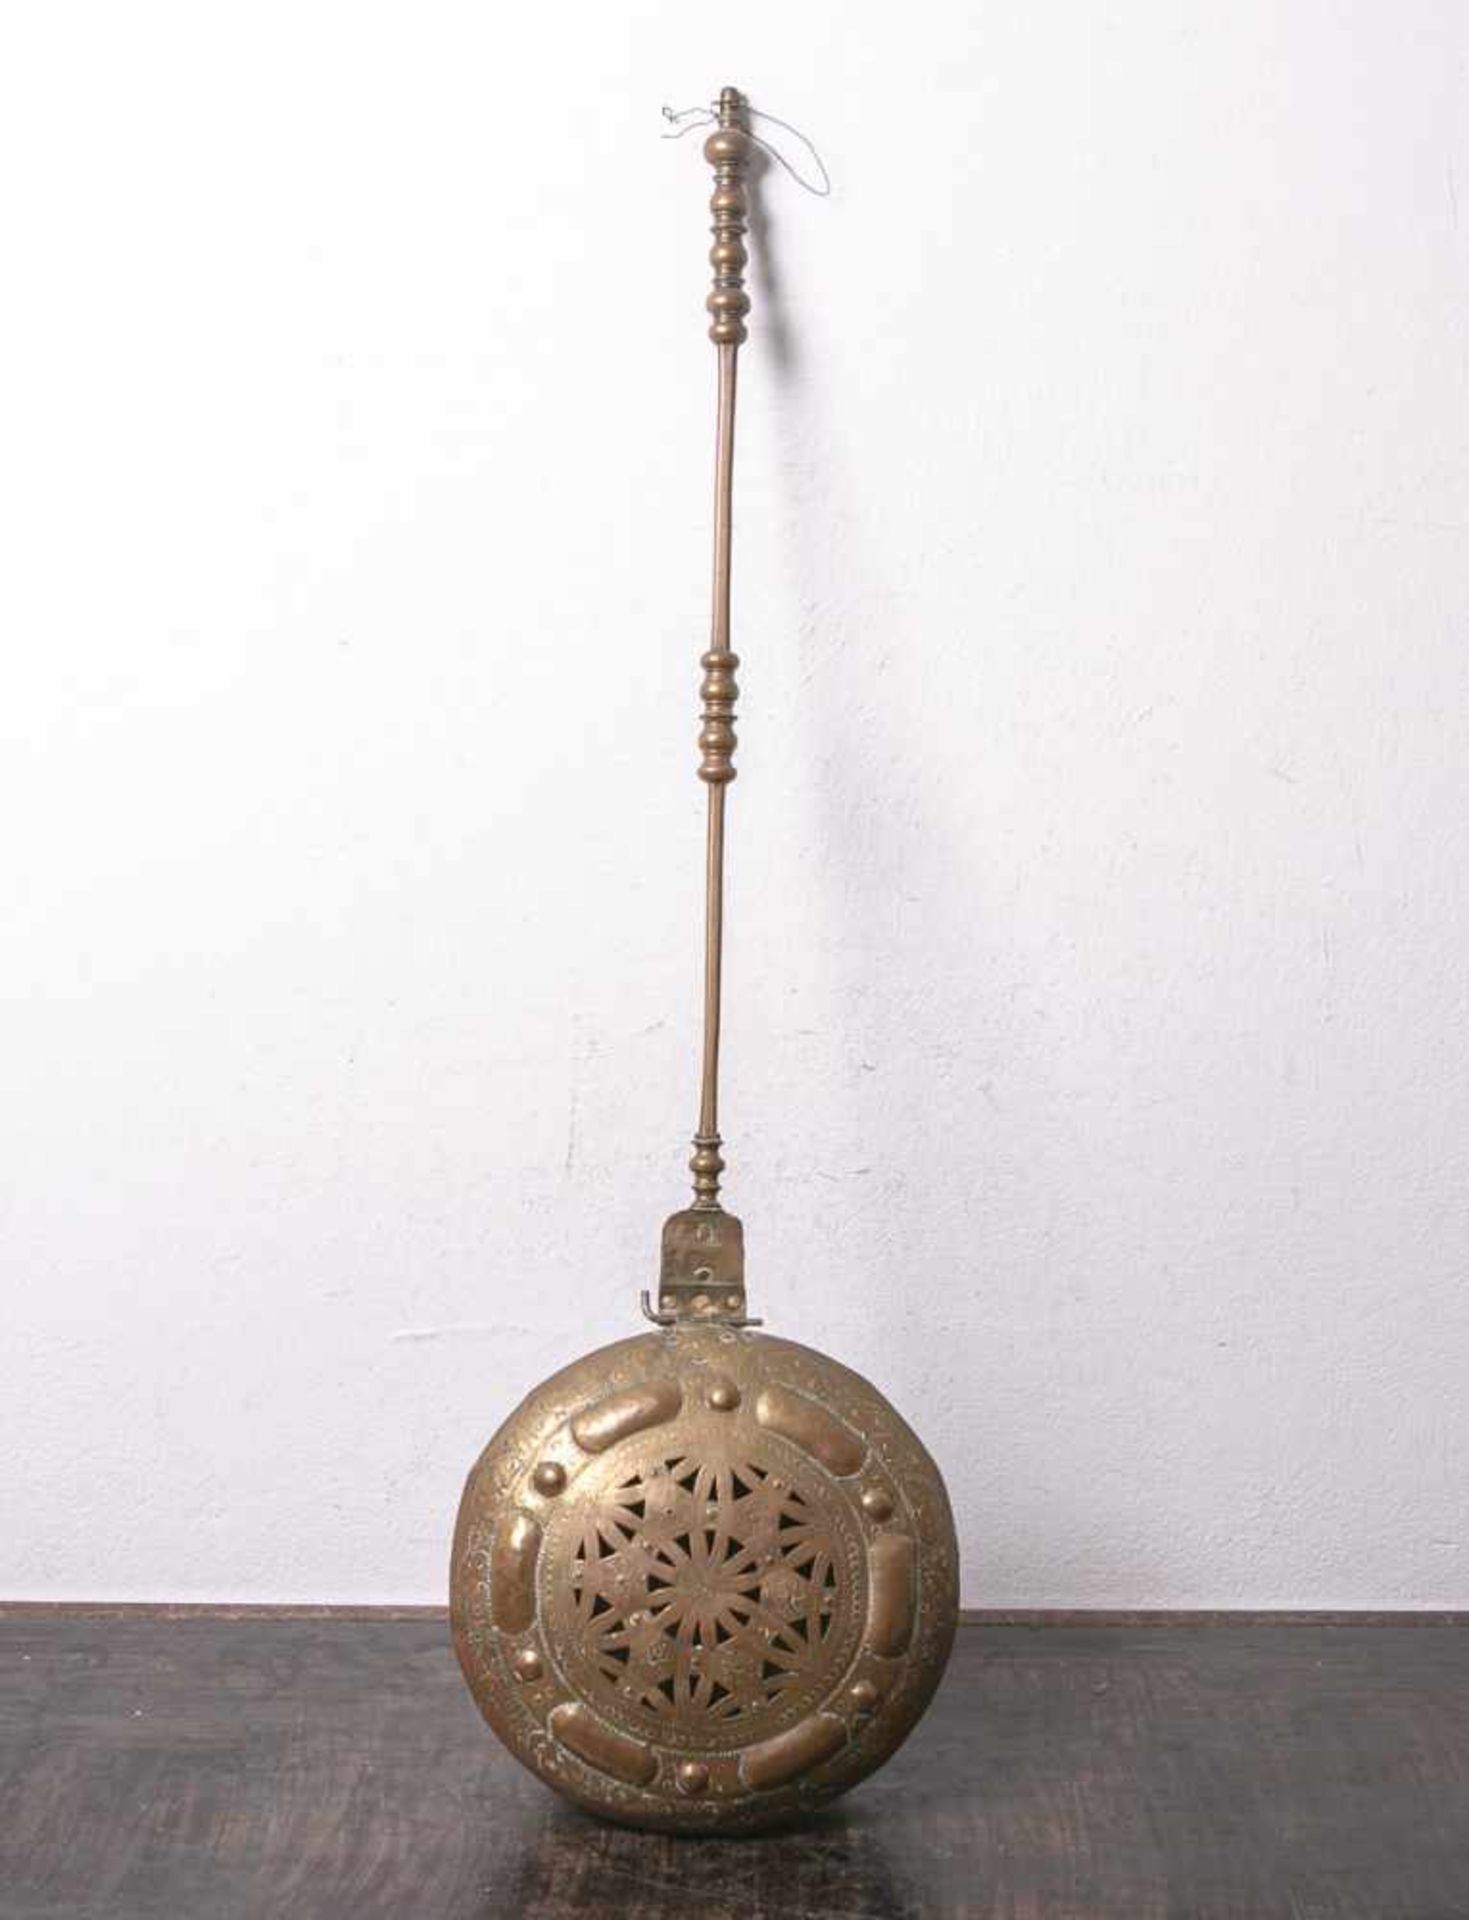 Bettpfanne bzw. Bettwärmer (18. Jahrhundert), Messing/Kupfer, runde Form m. durchbrochengearbeitetem